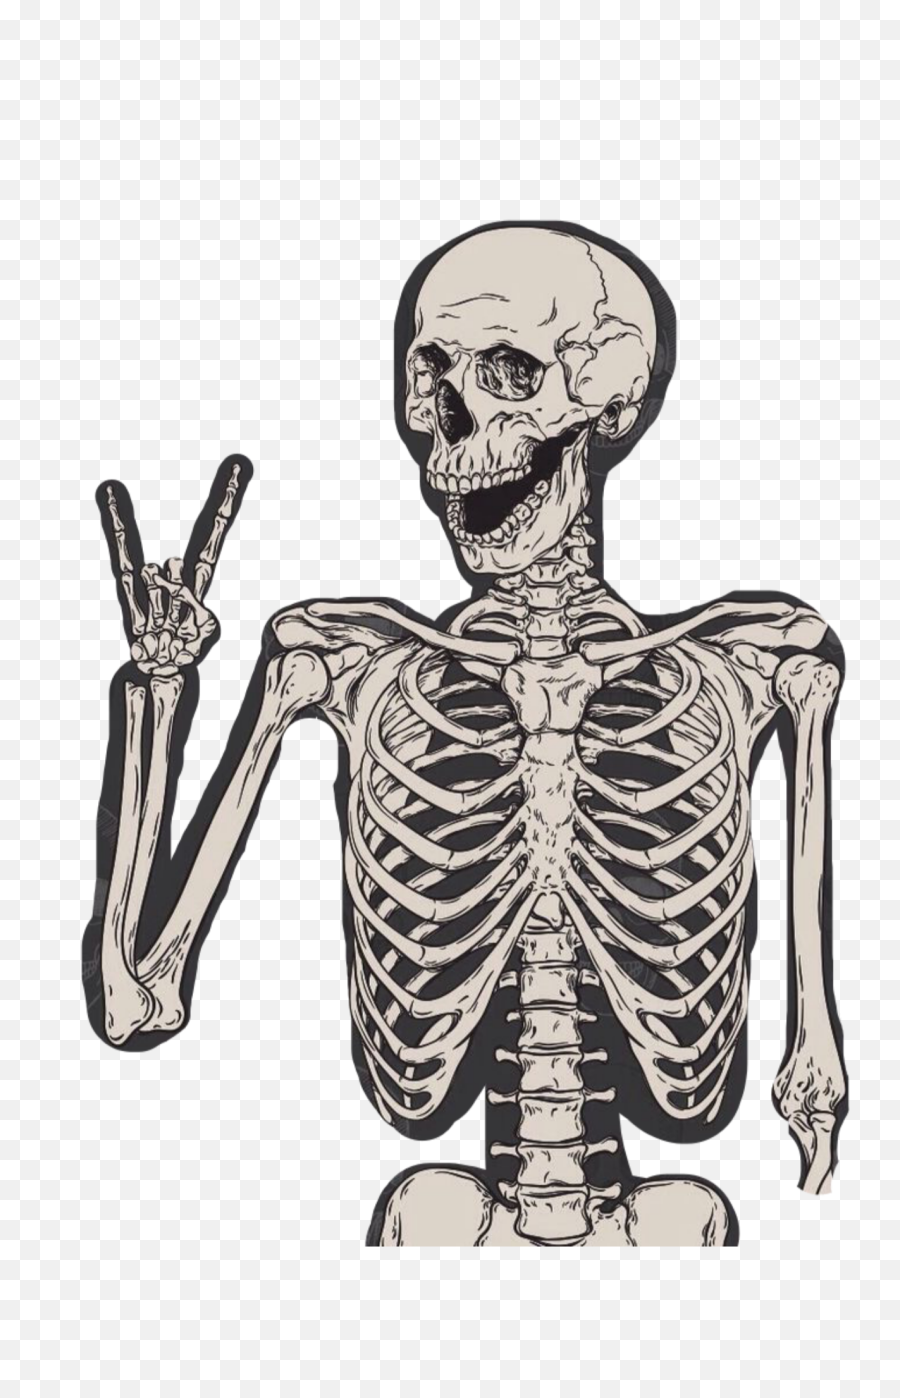 Freetoedit Woo Hoo Skeleton - Skeleton With Rock Hands Emoji,Woo Hoo Emoji